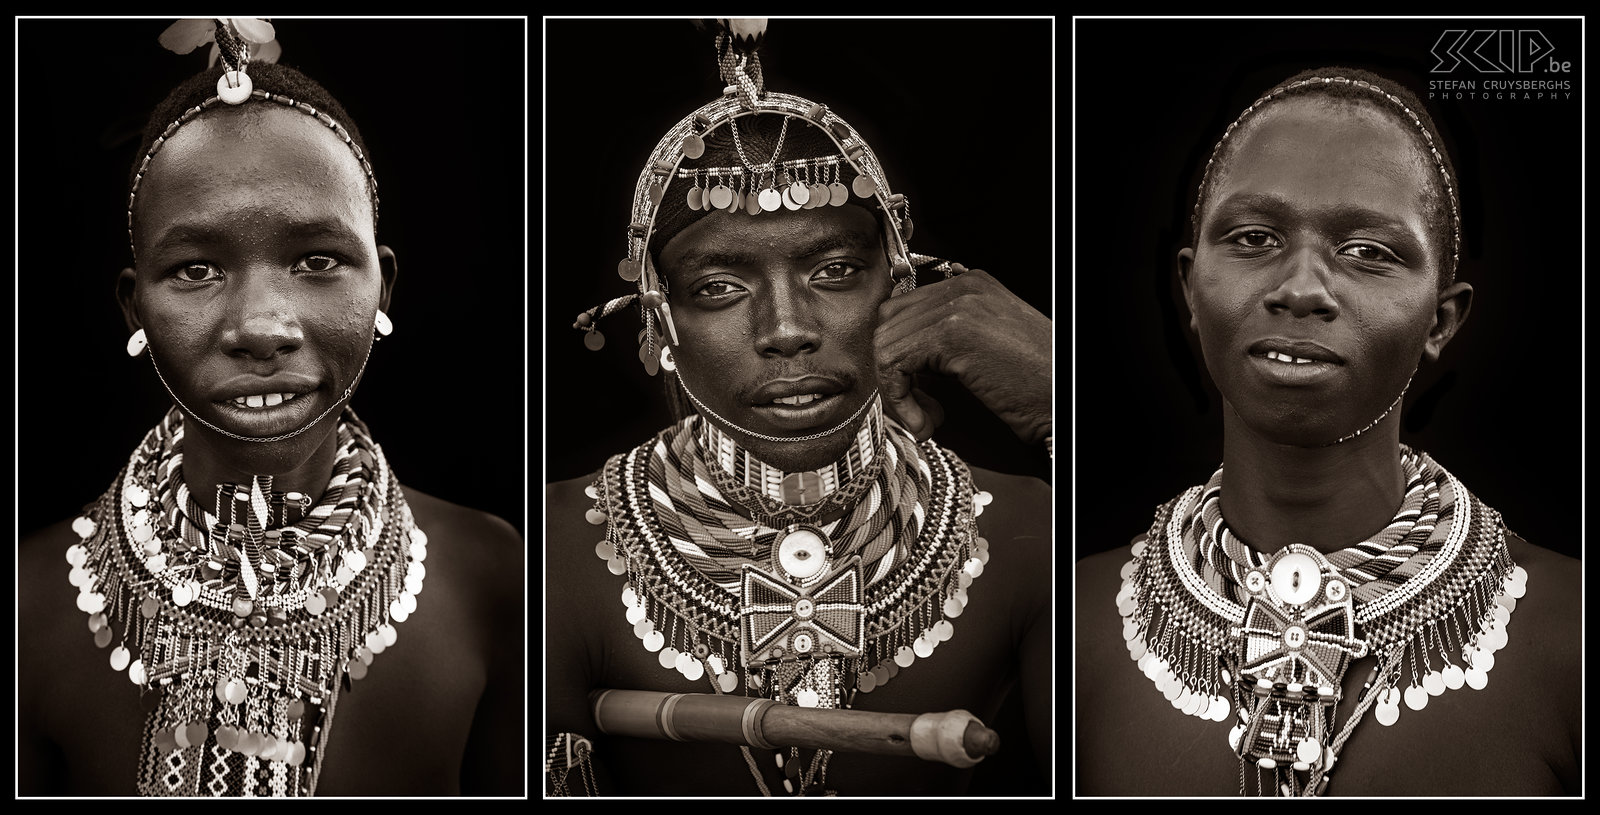 Suguta Marma - Samburu morans Collage van 3 portretten van onze Samburu vrienden Stefan Cruysberghs